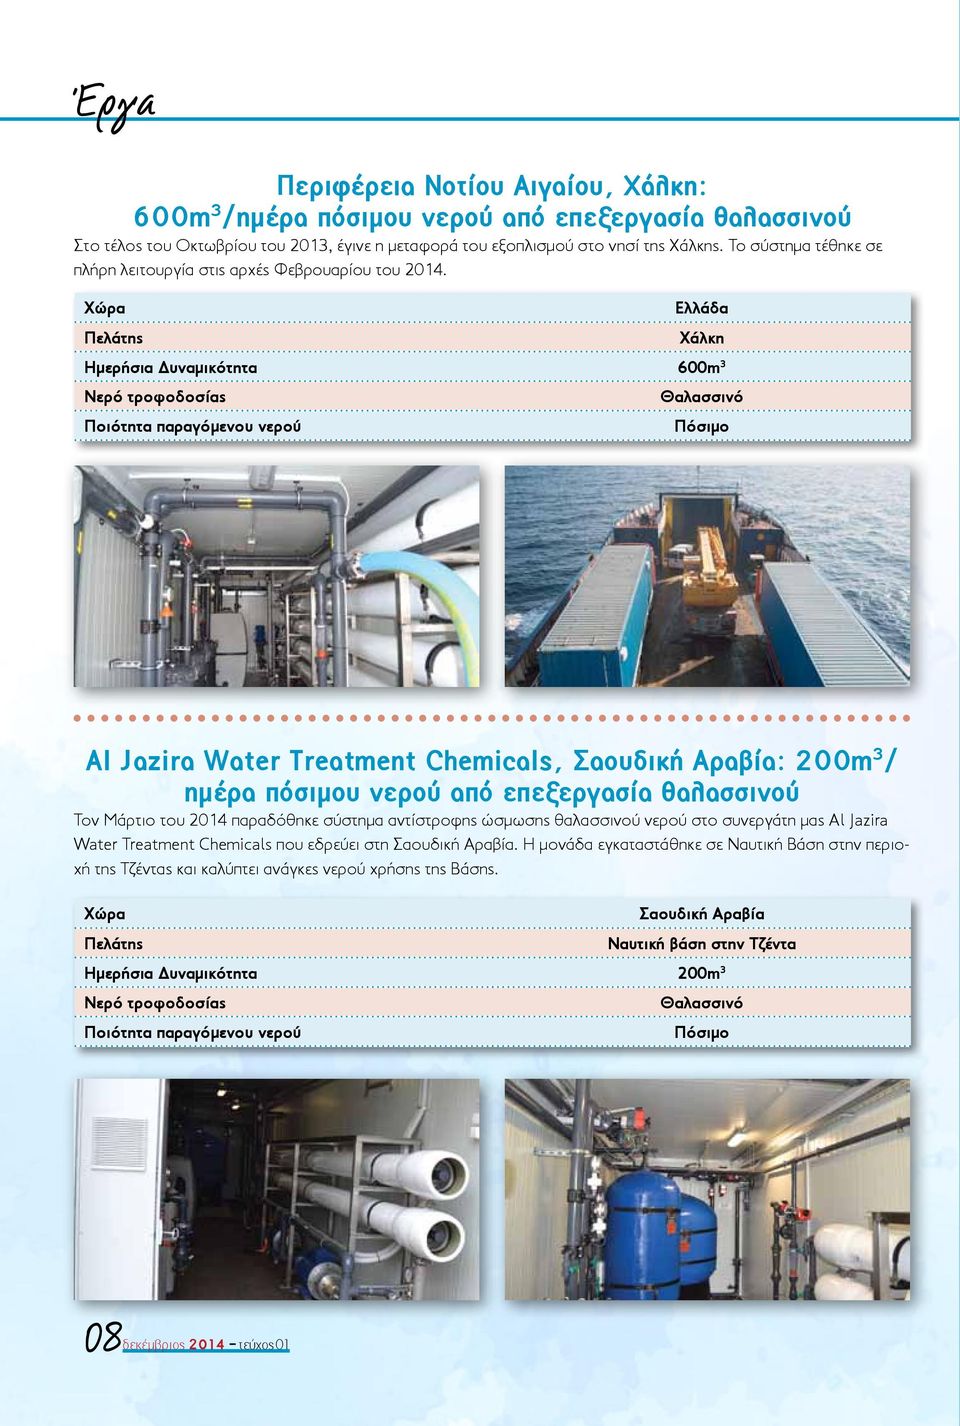 Ελλάδα Χάλκη Ημερήσια Δυναμικότητα 600m 3 Πόσιμο Al Jazira Water Treatment Chemicals, Σαουδική Αραβία: 200m 3 / ημέρα πόσιμου νερού από επεξεργασία θαλασσινού Τον Μάρτιο του 2014 παραδόθηκε σύστημα